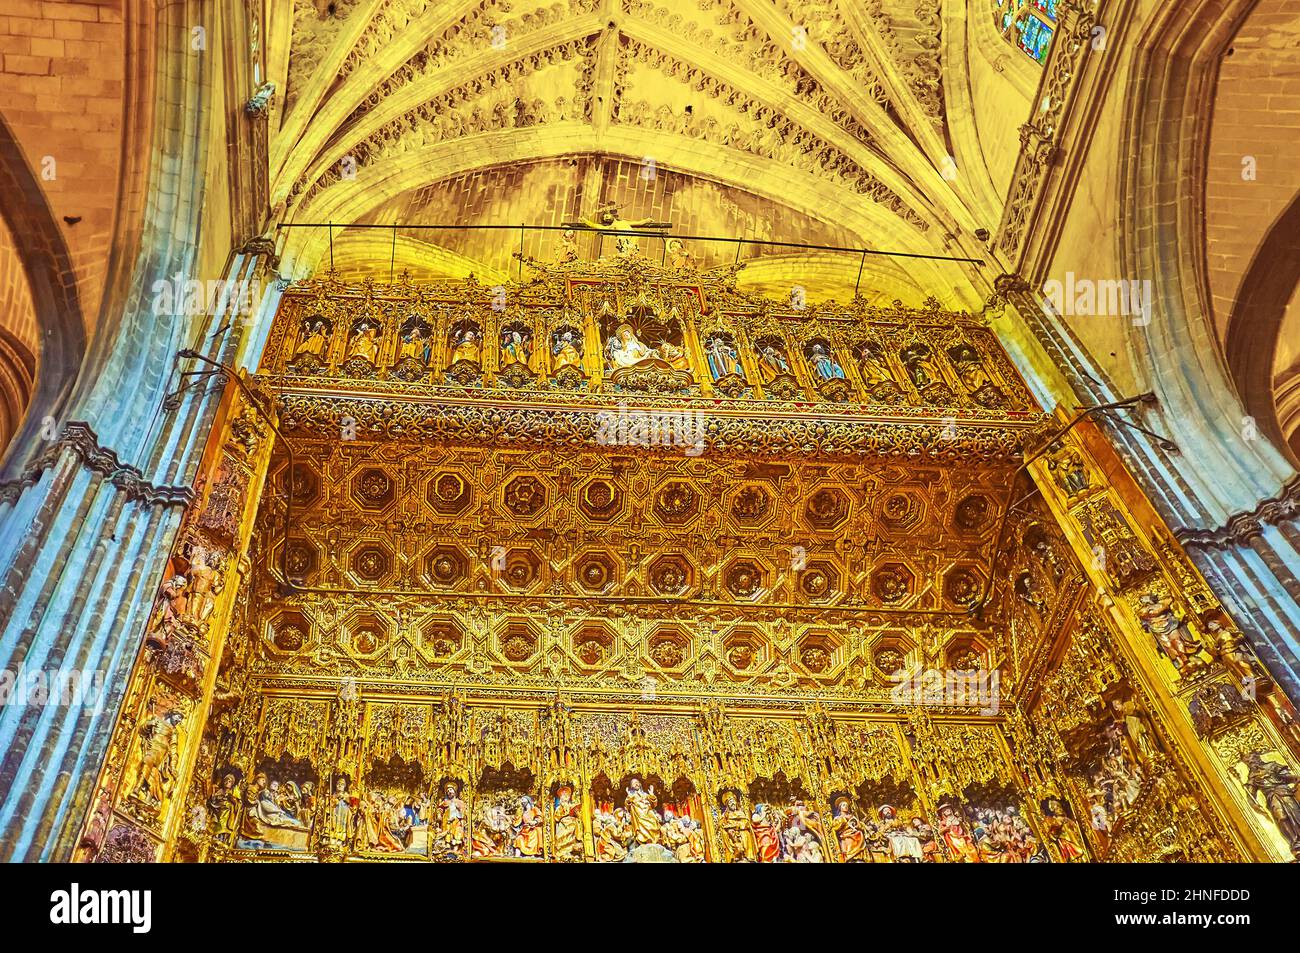 SEVILLA, SPANIEN - 29. SEPTEMBER 2019: Die geschnitzten vergoldeten Holzdetails des Altarbürgermeisters der Kathedrale von Sevilla mit Reliefornamenten und Skulpturen, am 2. September Stockfoto